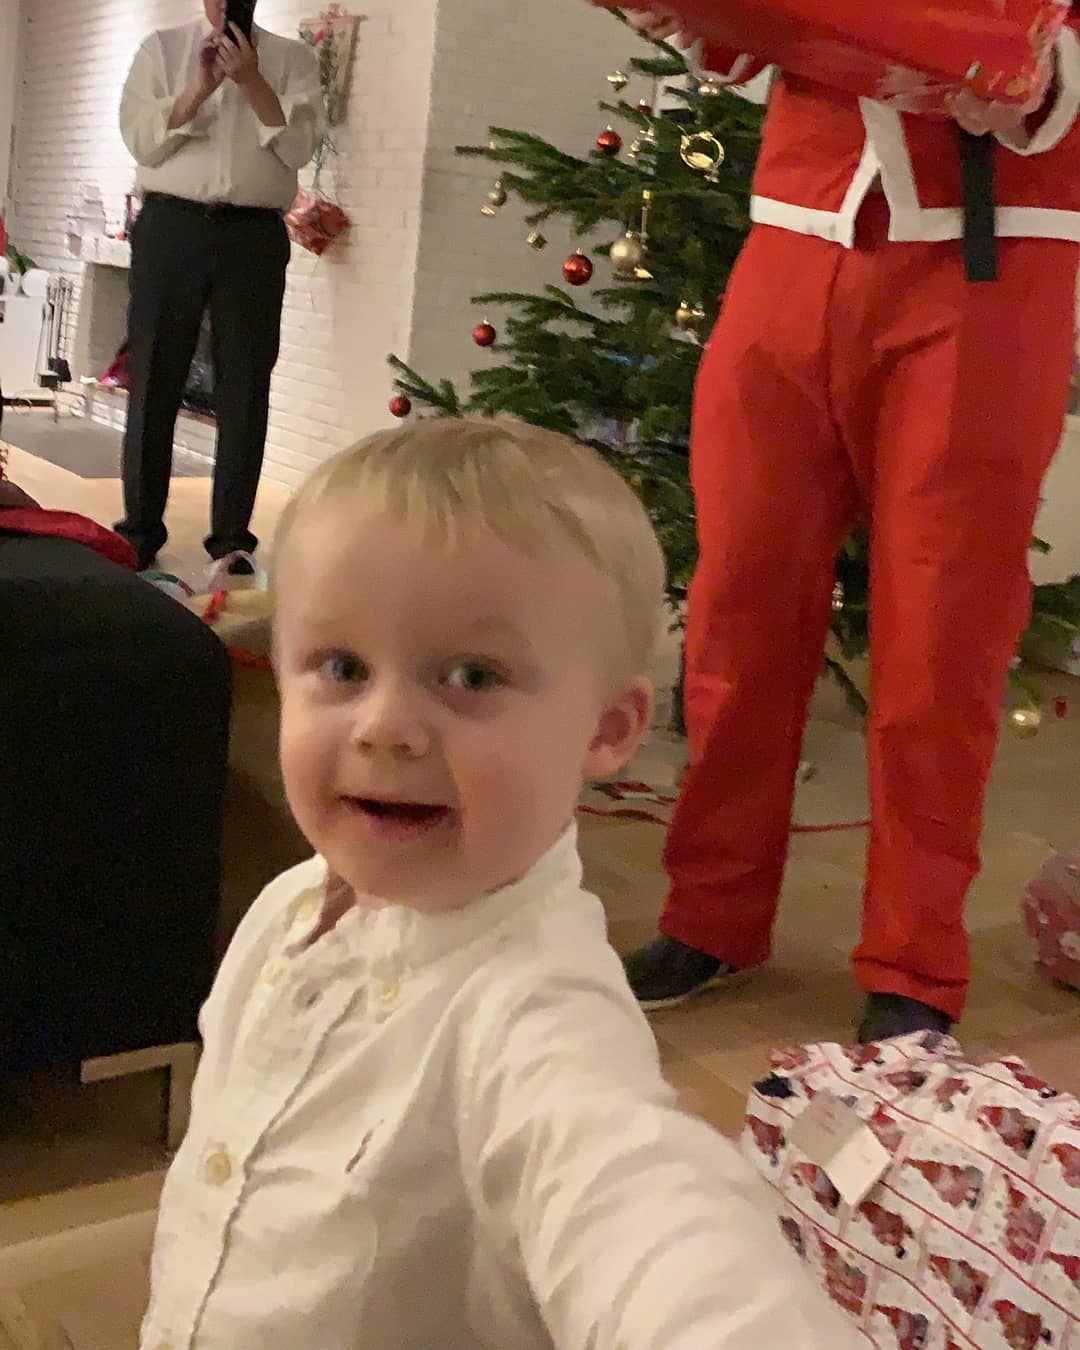 Lucas var meget begejstret over at julemanden kom på besøg at det skulle dokumenteres med ét selfie! :O
#julemanden #2år #selfie